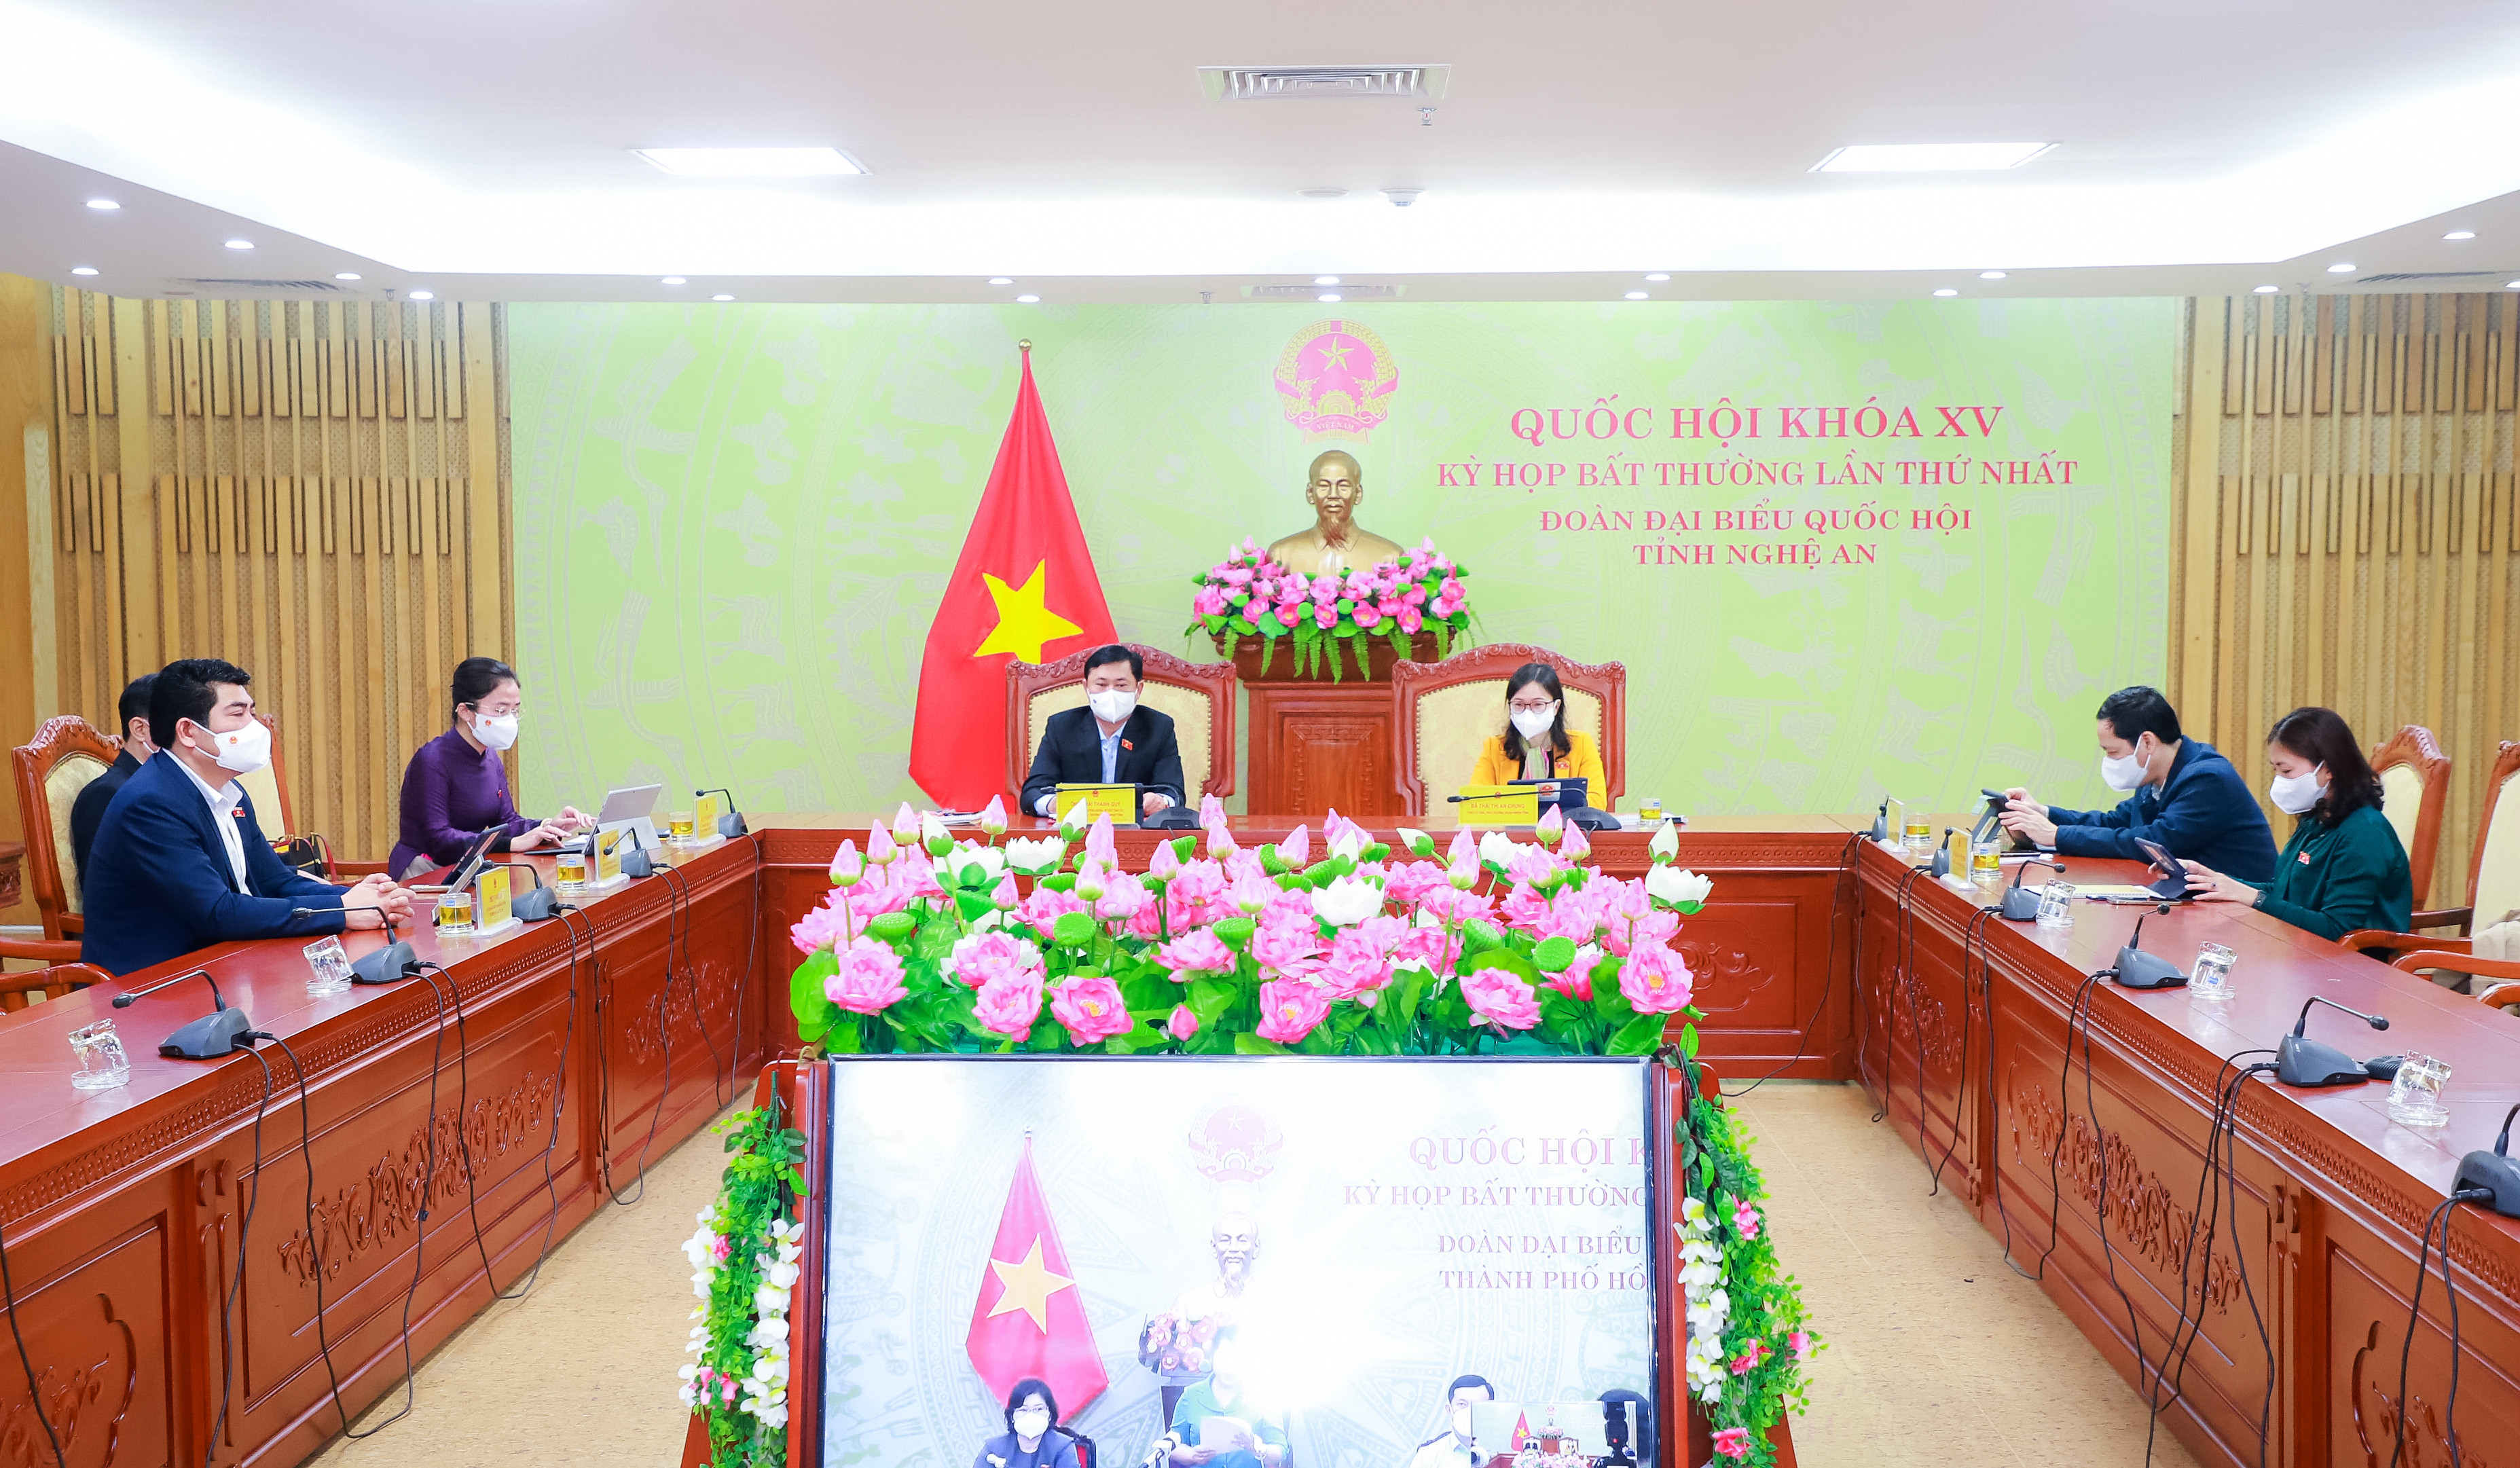 Các đại biểu dự kỳ họp tại điểm cầu Đoàn ĐBQH tỉnh Nghệ An. Ảnh: Thành Duy